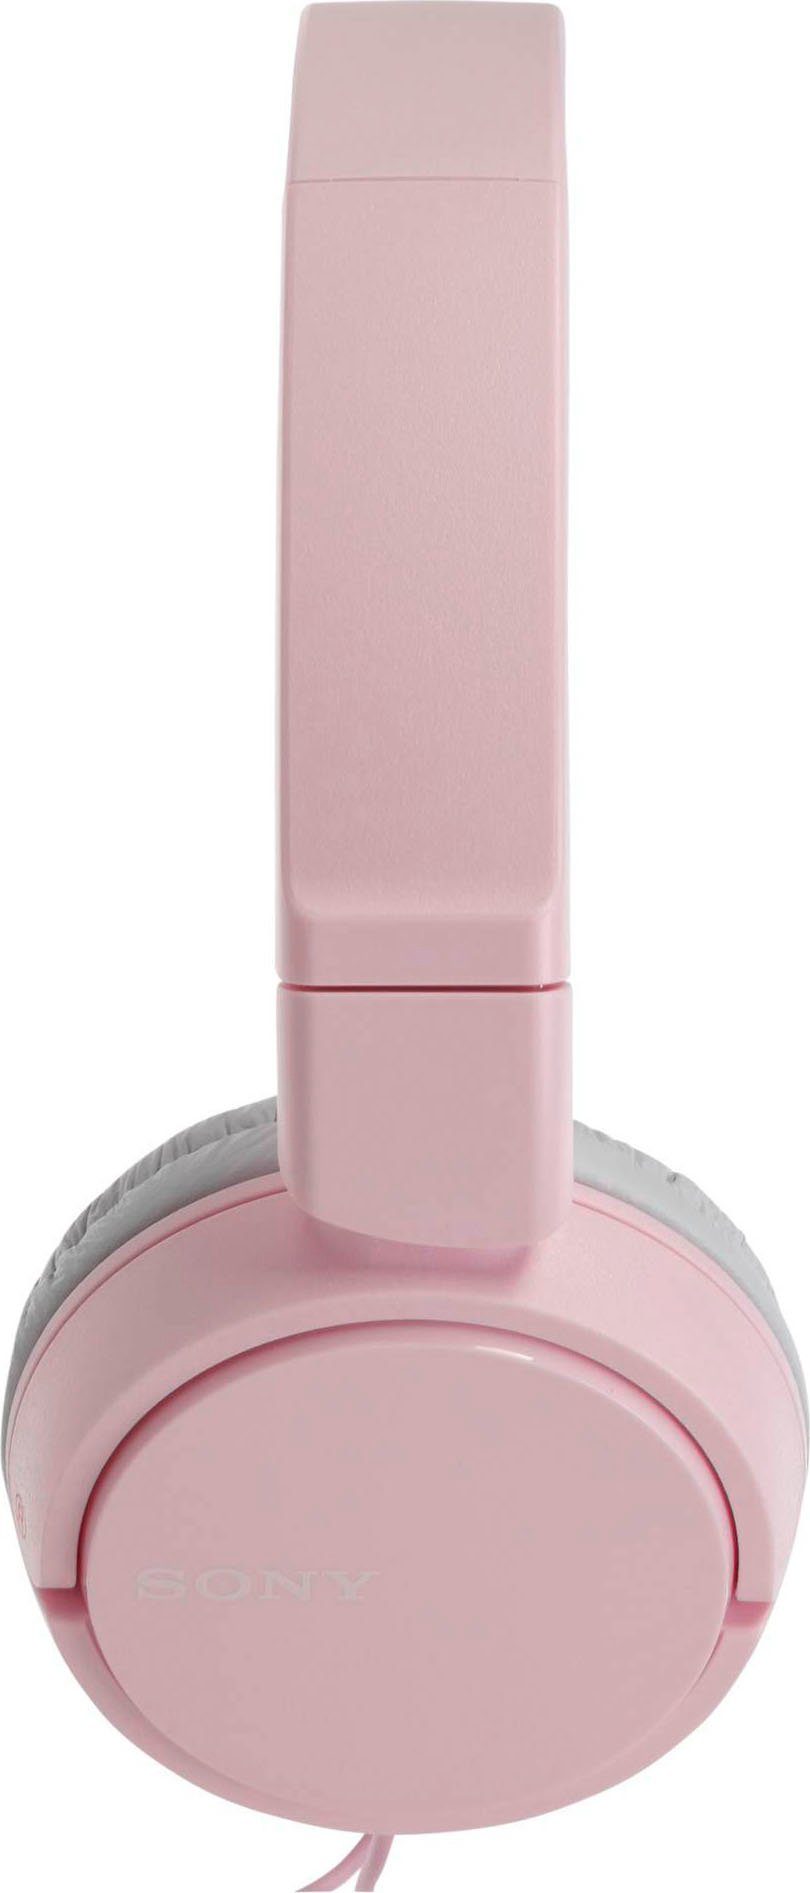 Sony MDR-ZX110AP pink (Freisprechfunktion, On-Ear-Kopfhörer Musik, Steuerung integrierte mit Headsetfunktion) Faltbarer und für Anrufe